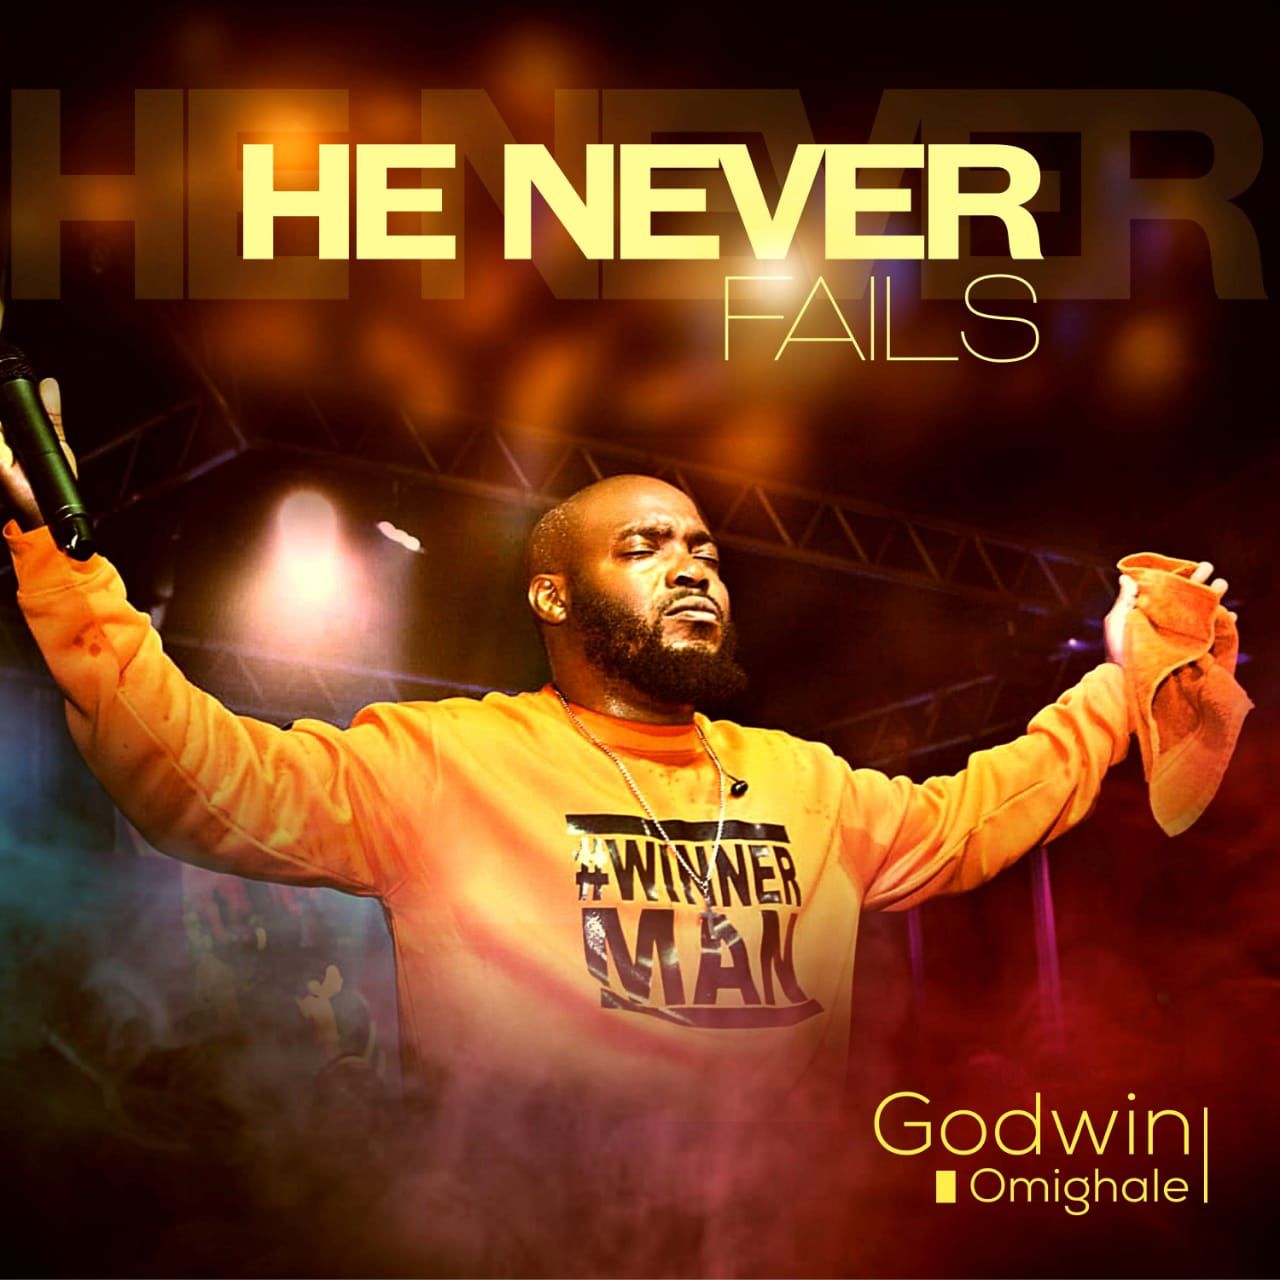 Godwin Omighale - He Never Fails